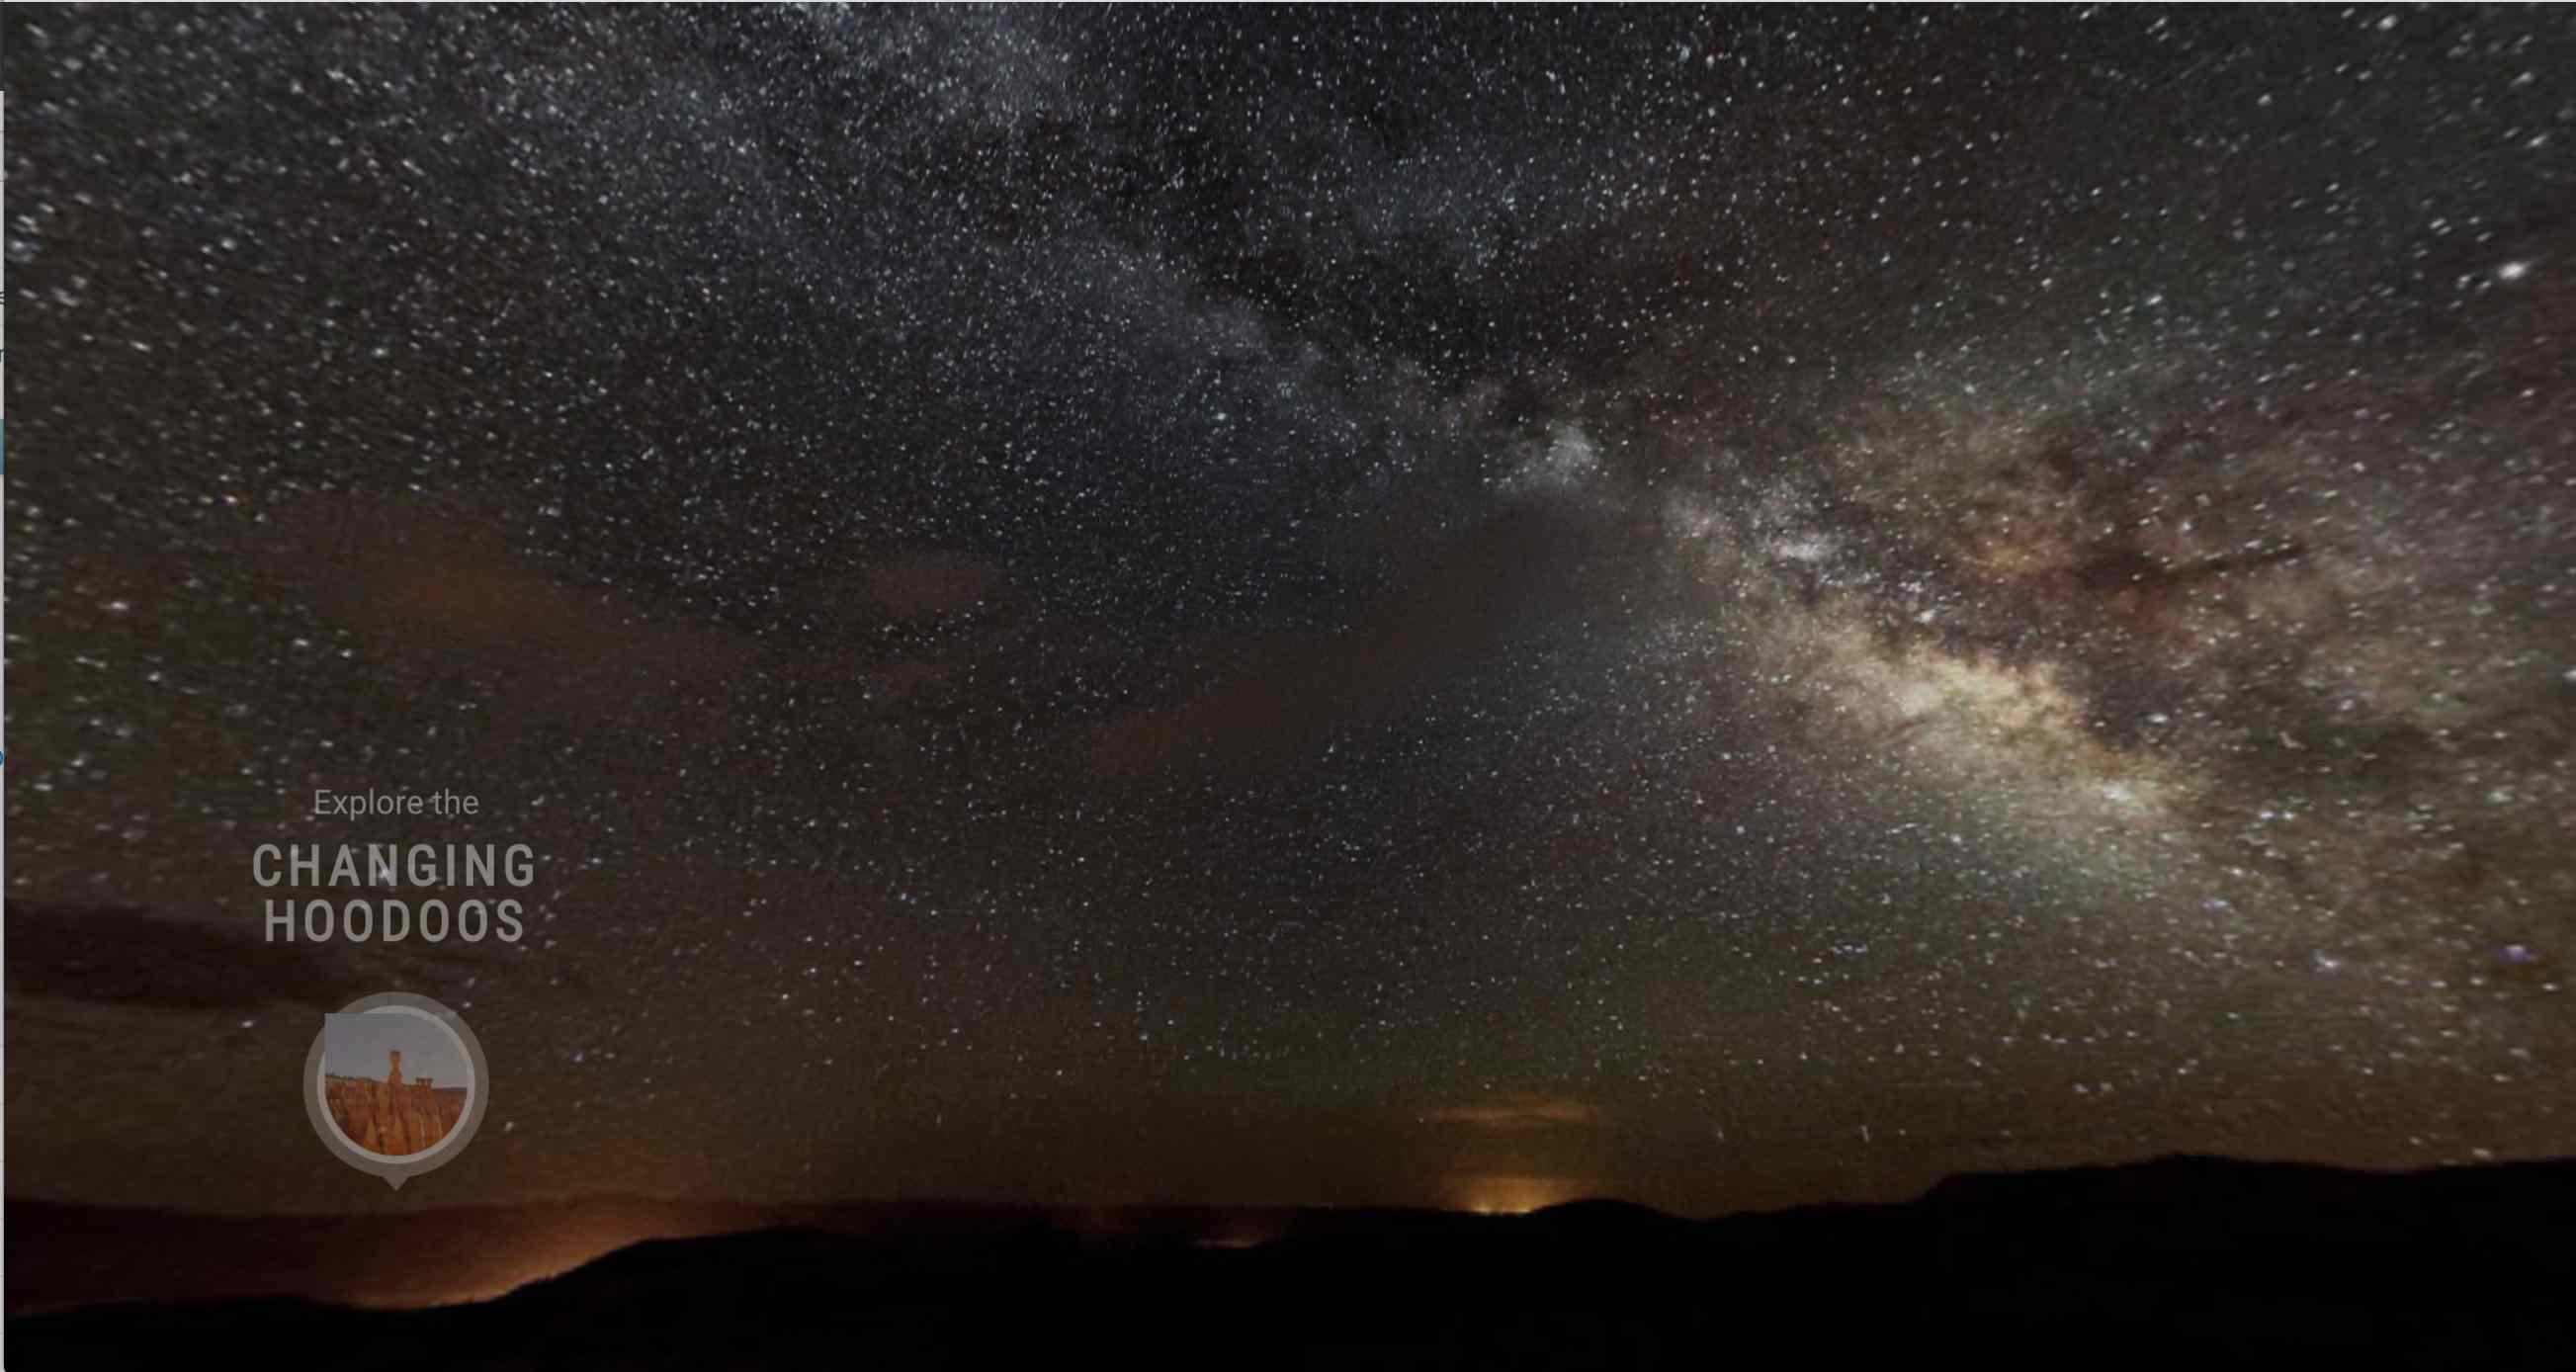 犹他州布莱斯峡谷国家公园的夜空